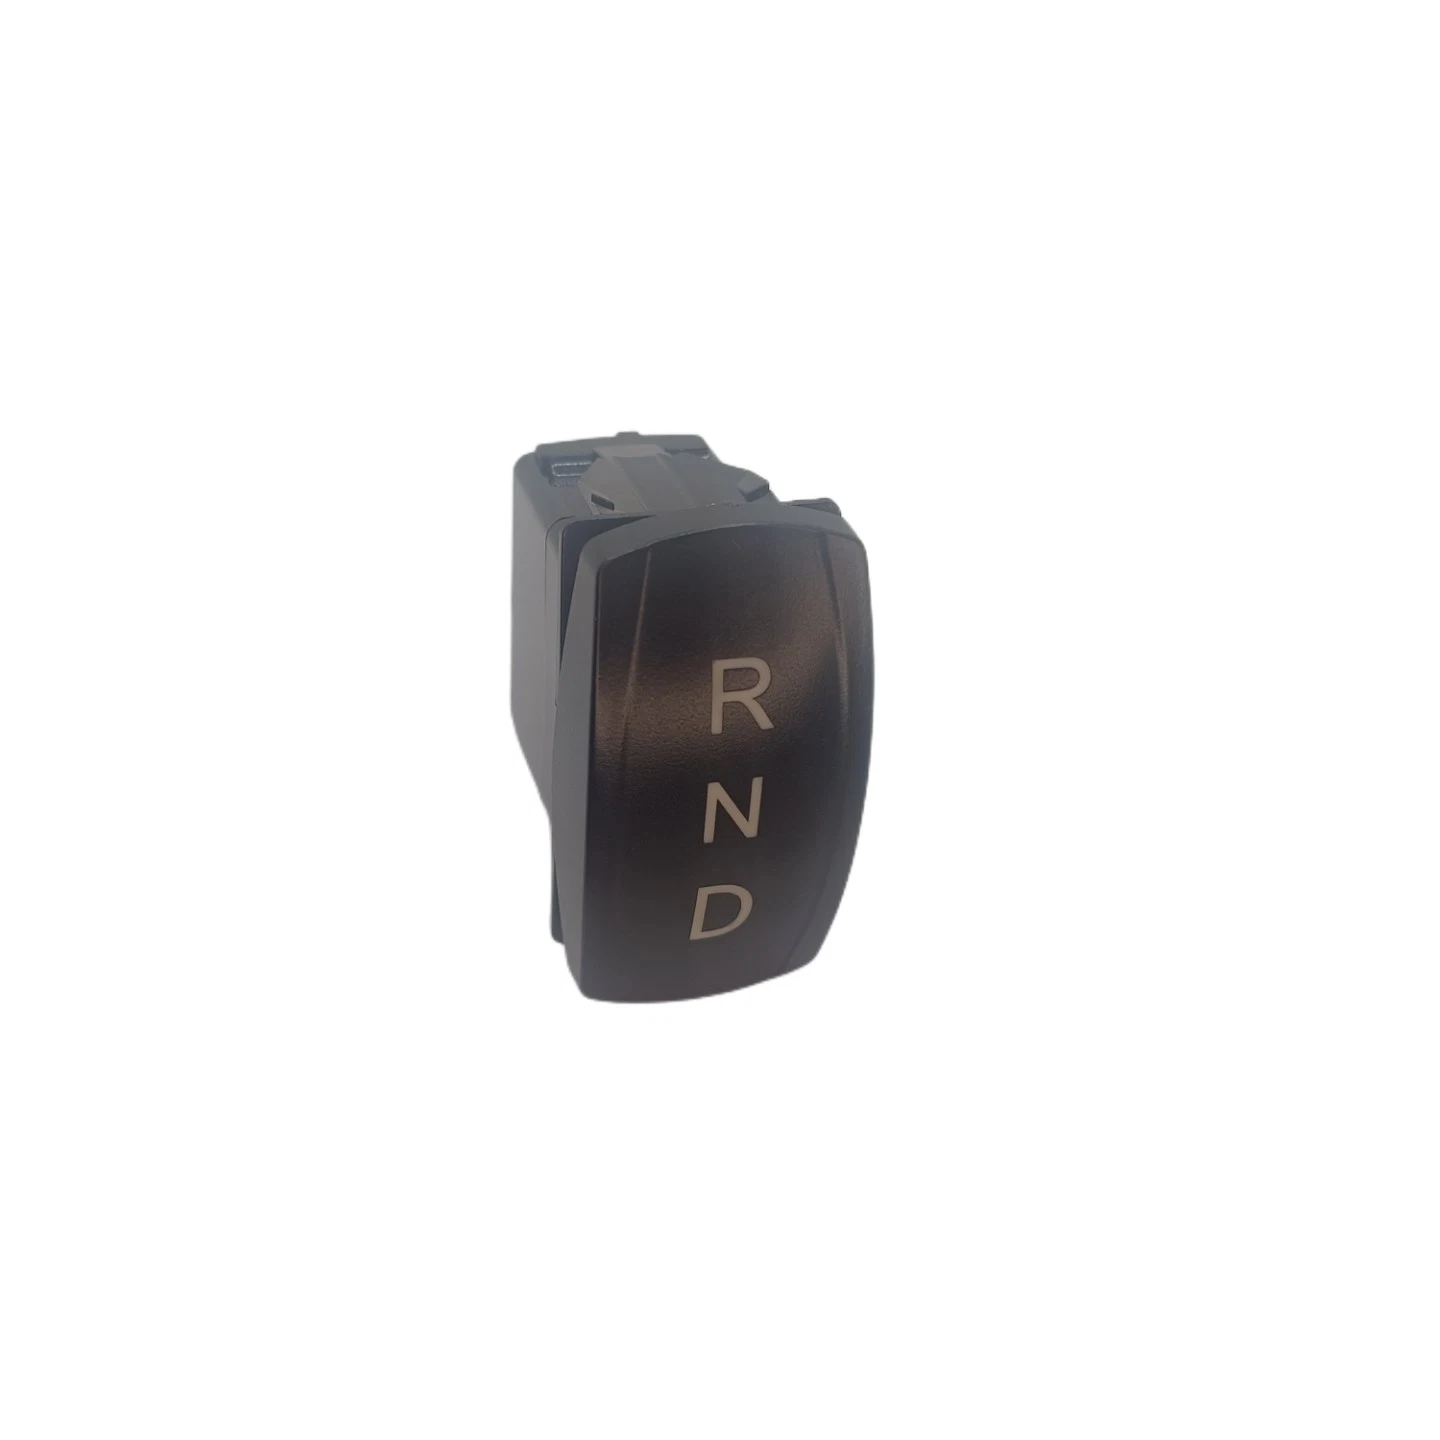 لوحة مفاتيح بحرية من نوع LED مقاومة للماء بأسلوب Carling باللون الأبيض الصارخ حامل لوحة USB مزدوج